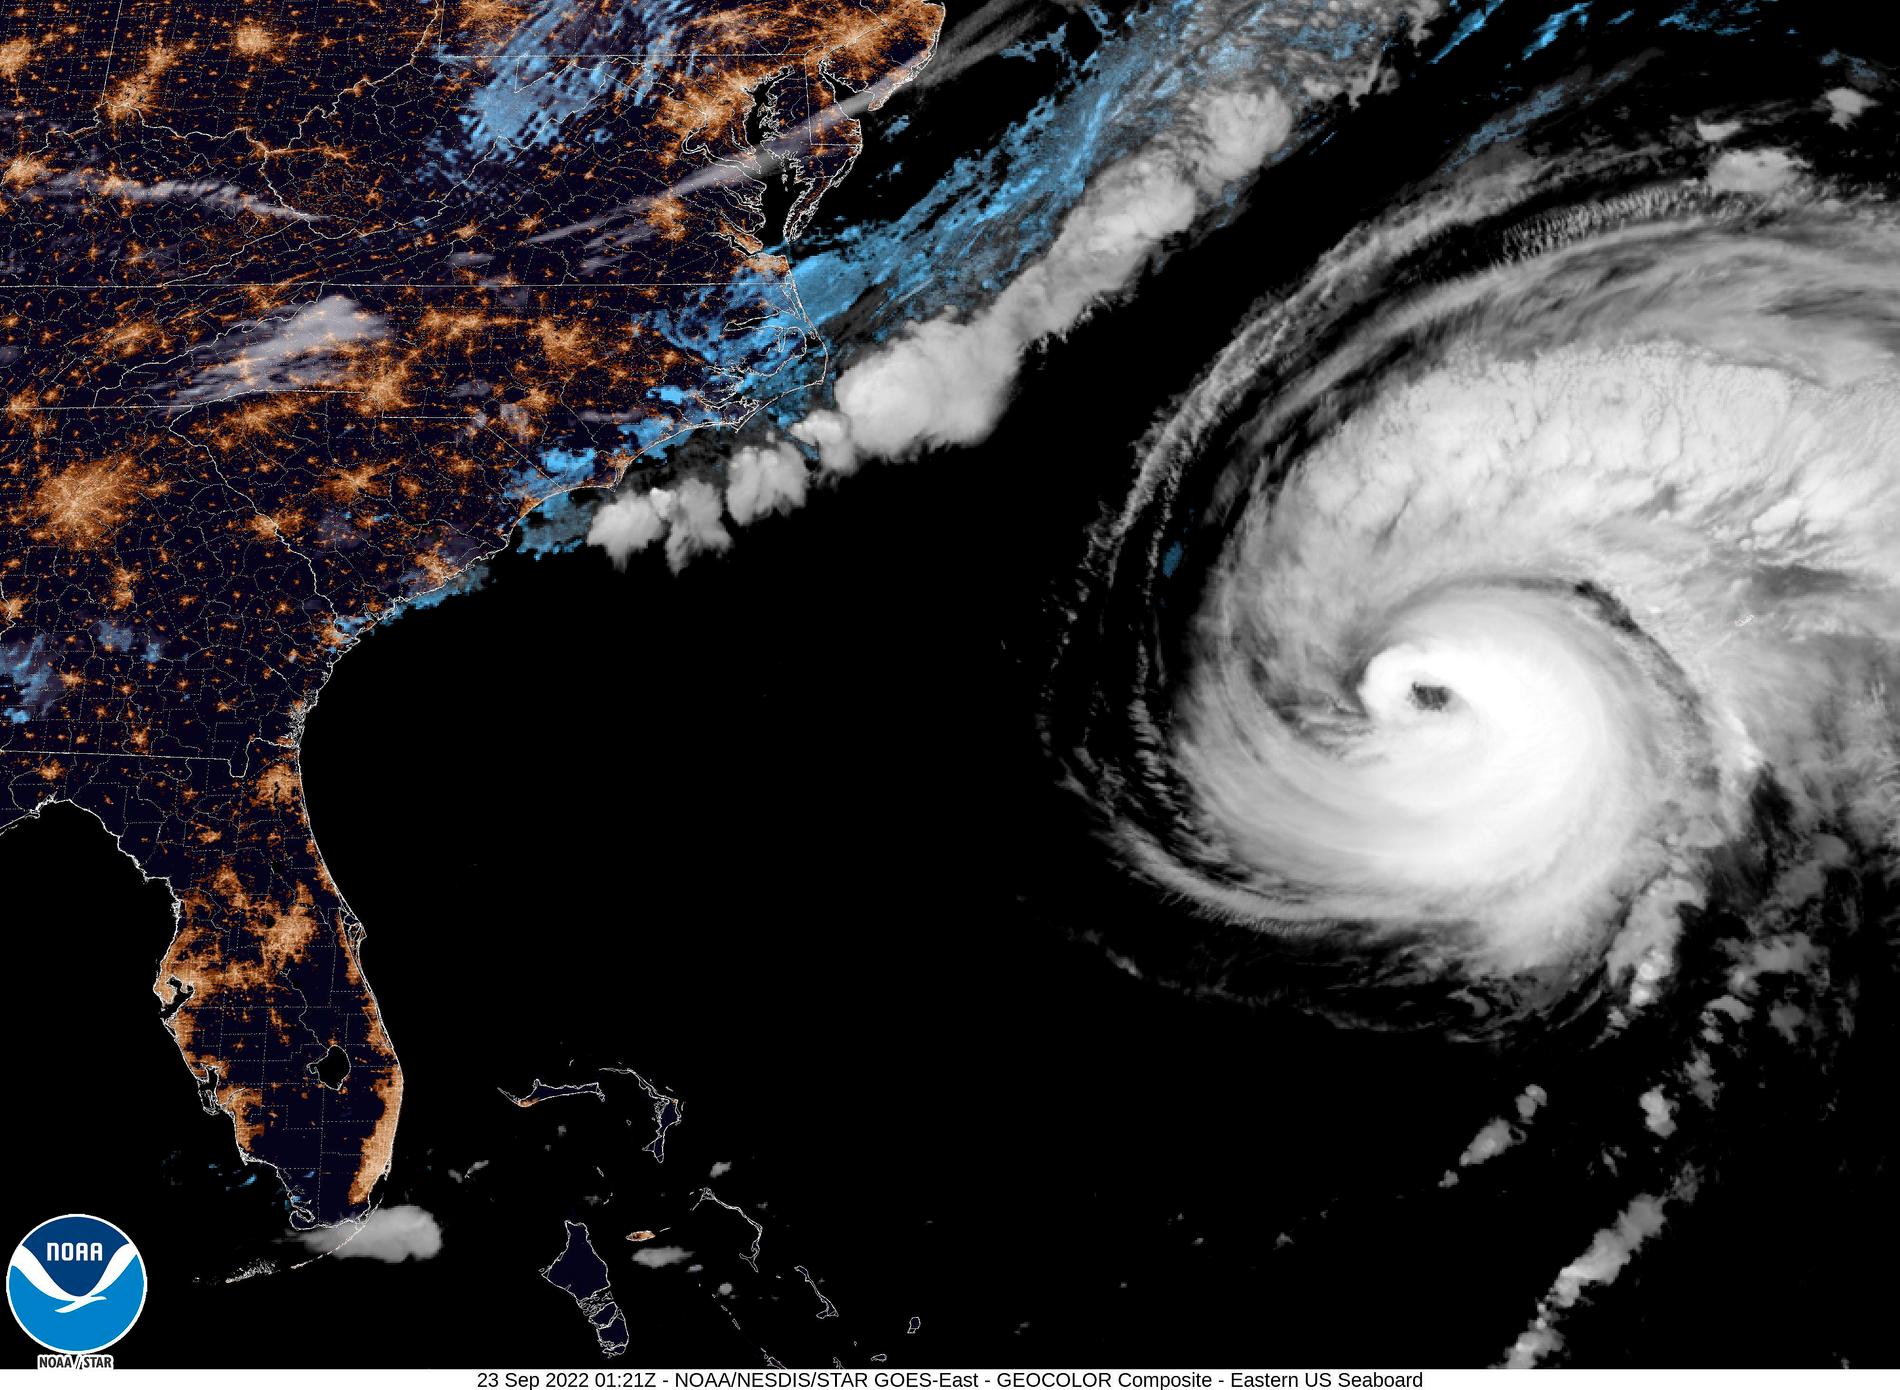 Satellitvyn visar orkanen Fiona – på väg uppför USA:s Atlantkust mot Kanada. Bilden är tagen av National Hurricane Center National Oceanic and Atmospheric Administrations rymdsatellit.